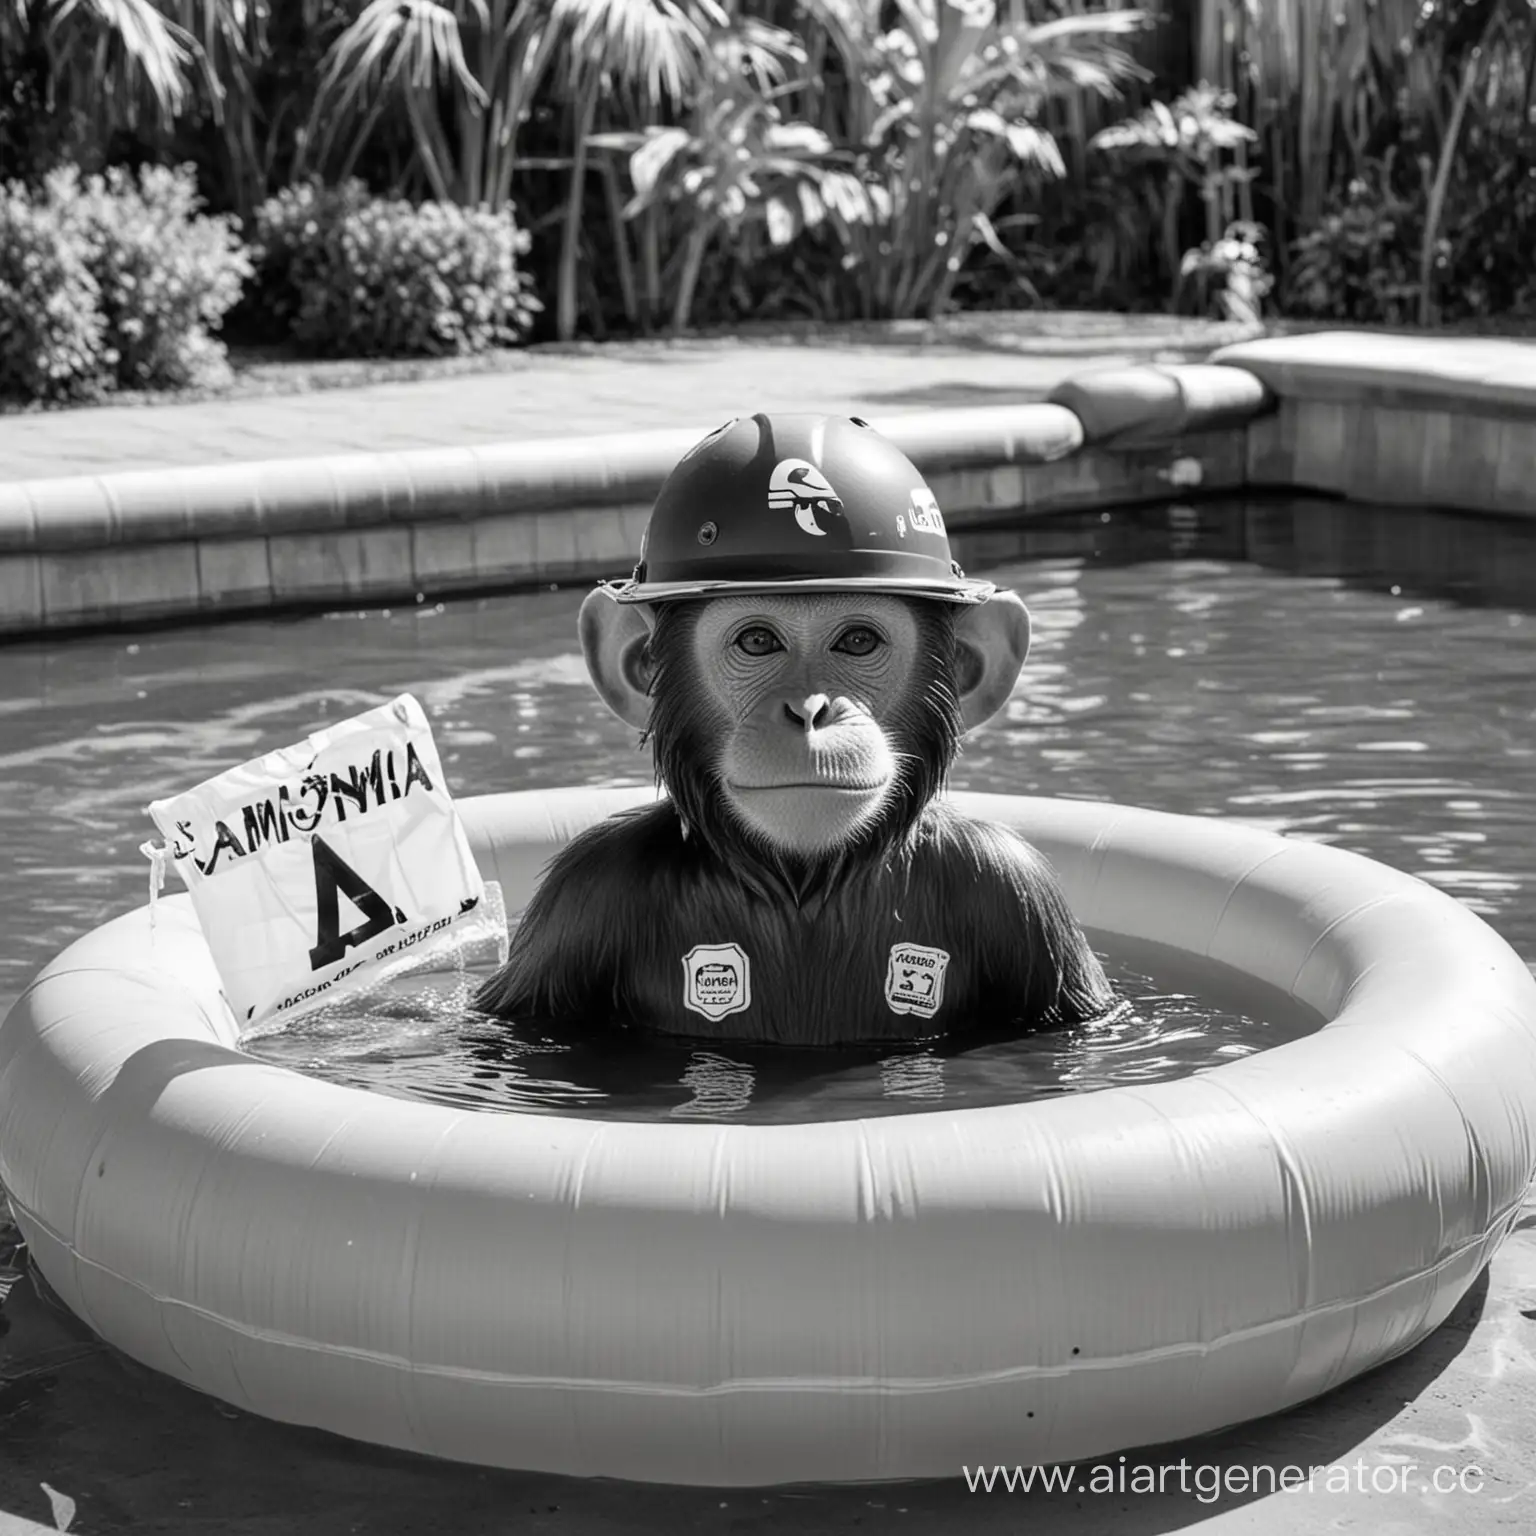 Мартышка в каске купается в надувном бассейне с аммиаком (на бассейне надпись "Аммиак"), Картинка черно белая